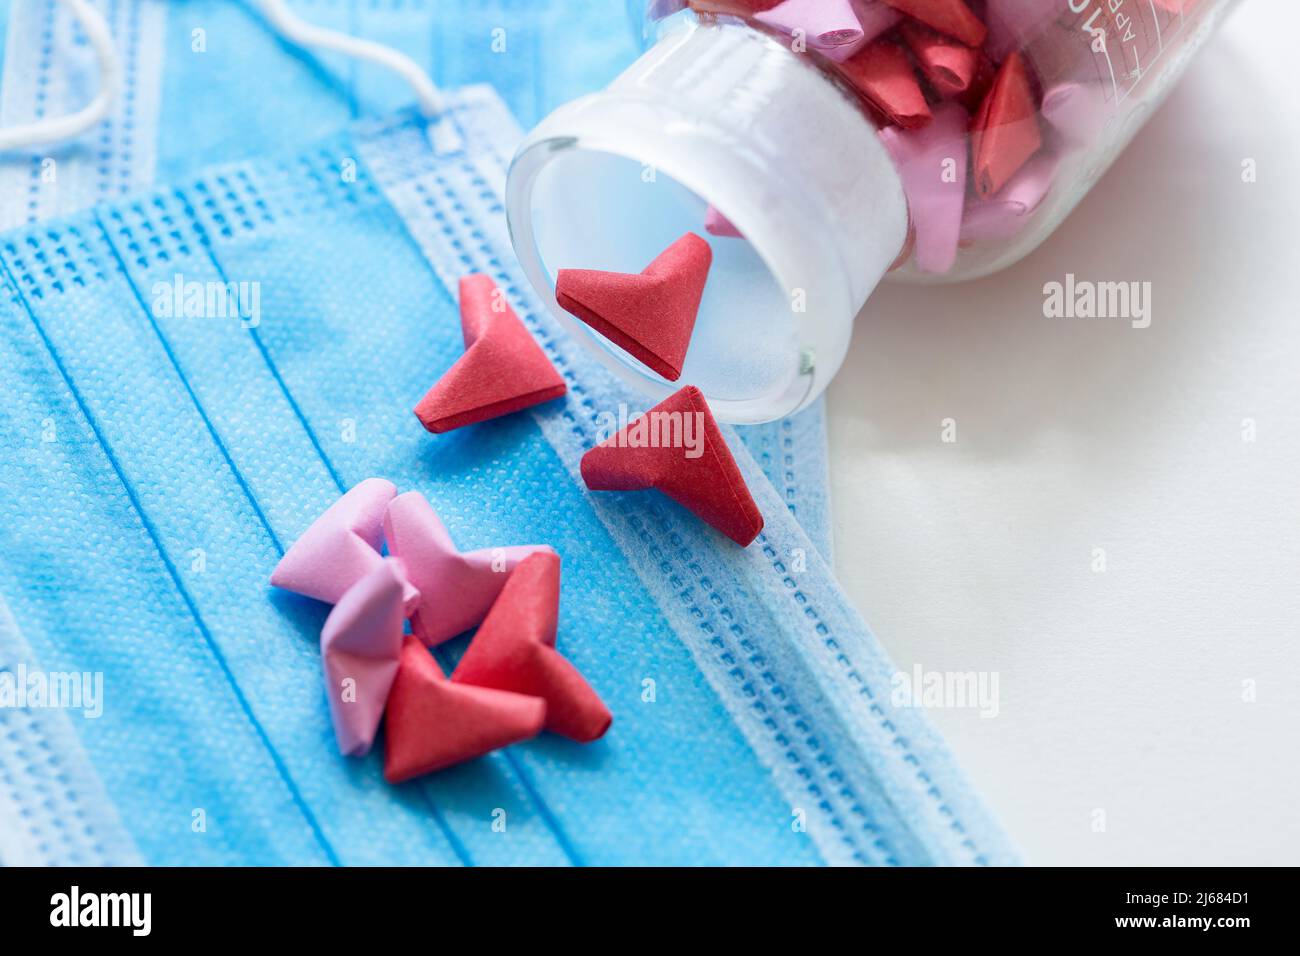 Blaue Einweg-Masken, Rosa und rot dreidimensionale Origami-Kunstwerk und transparentes Glas - Stock Foto Stockfoto